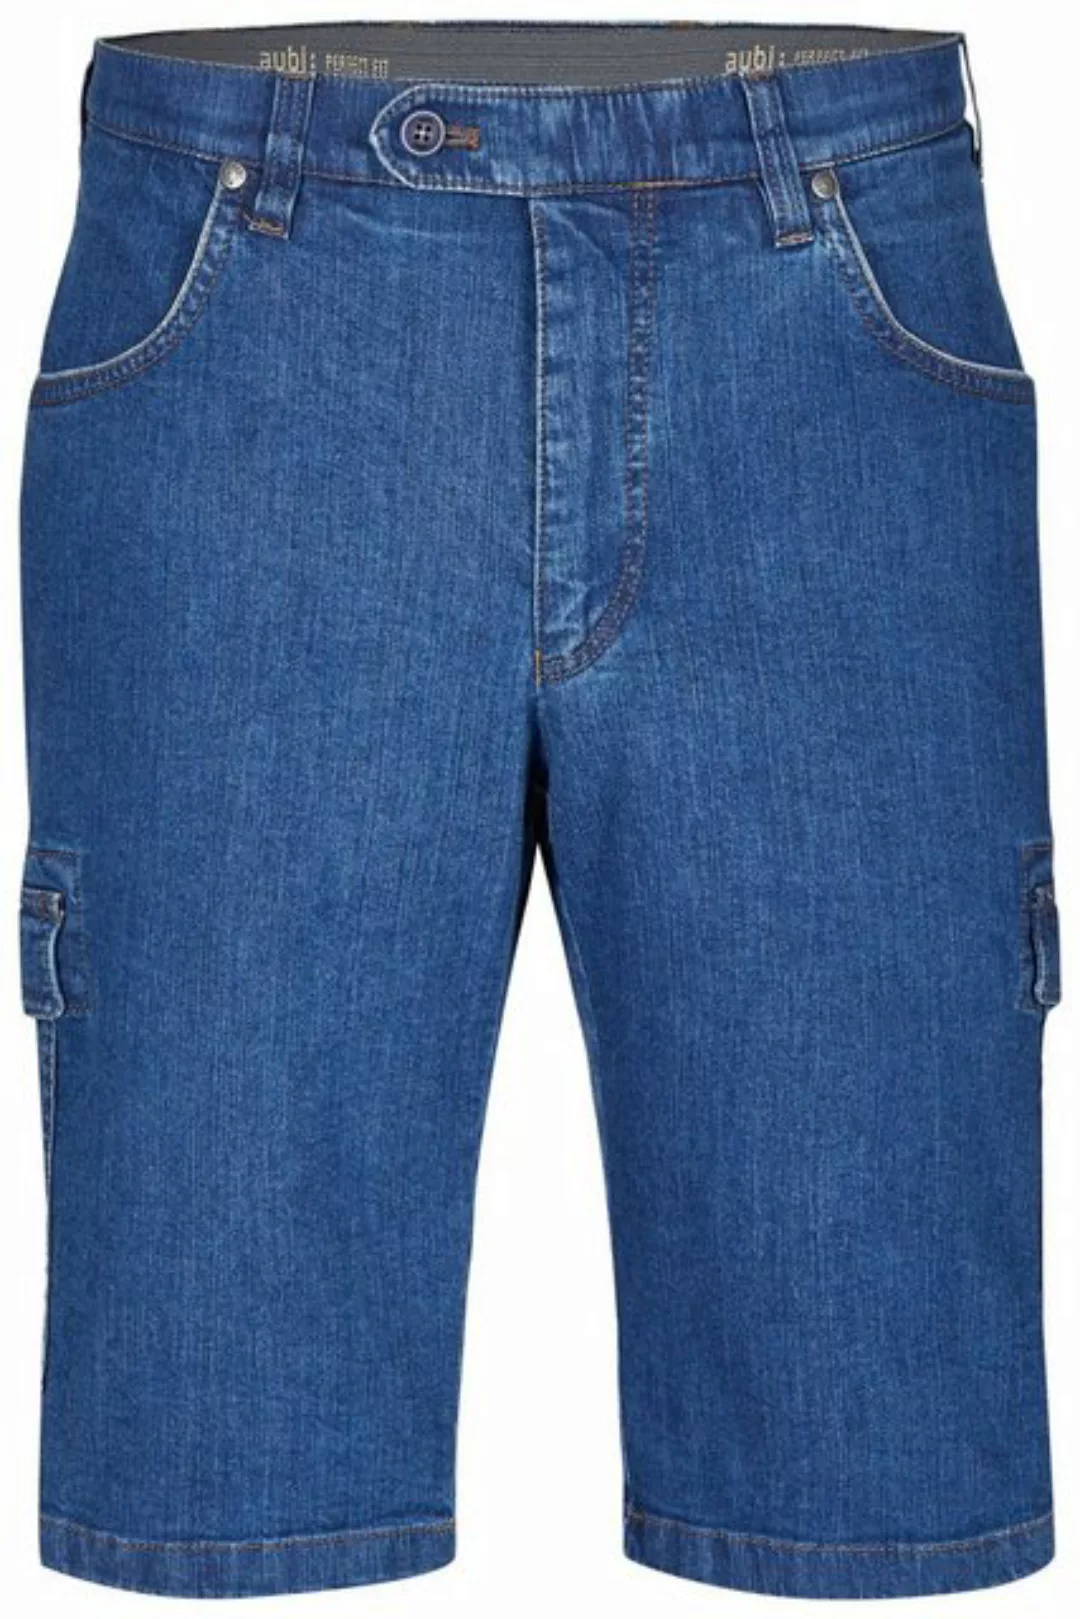 aubi: Stoffhose aubi Perfect Fit Herren Sommer Jeans Cargo Shorts Stretch a günstig online kaufen